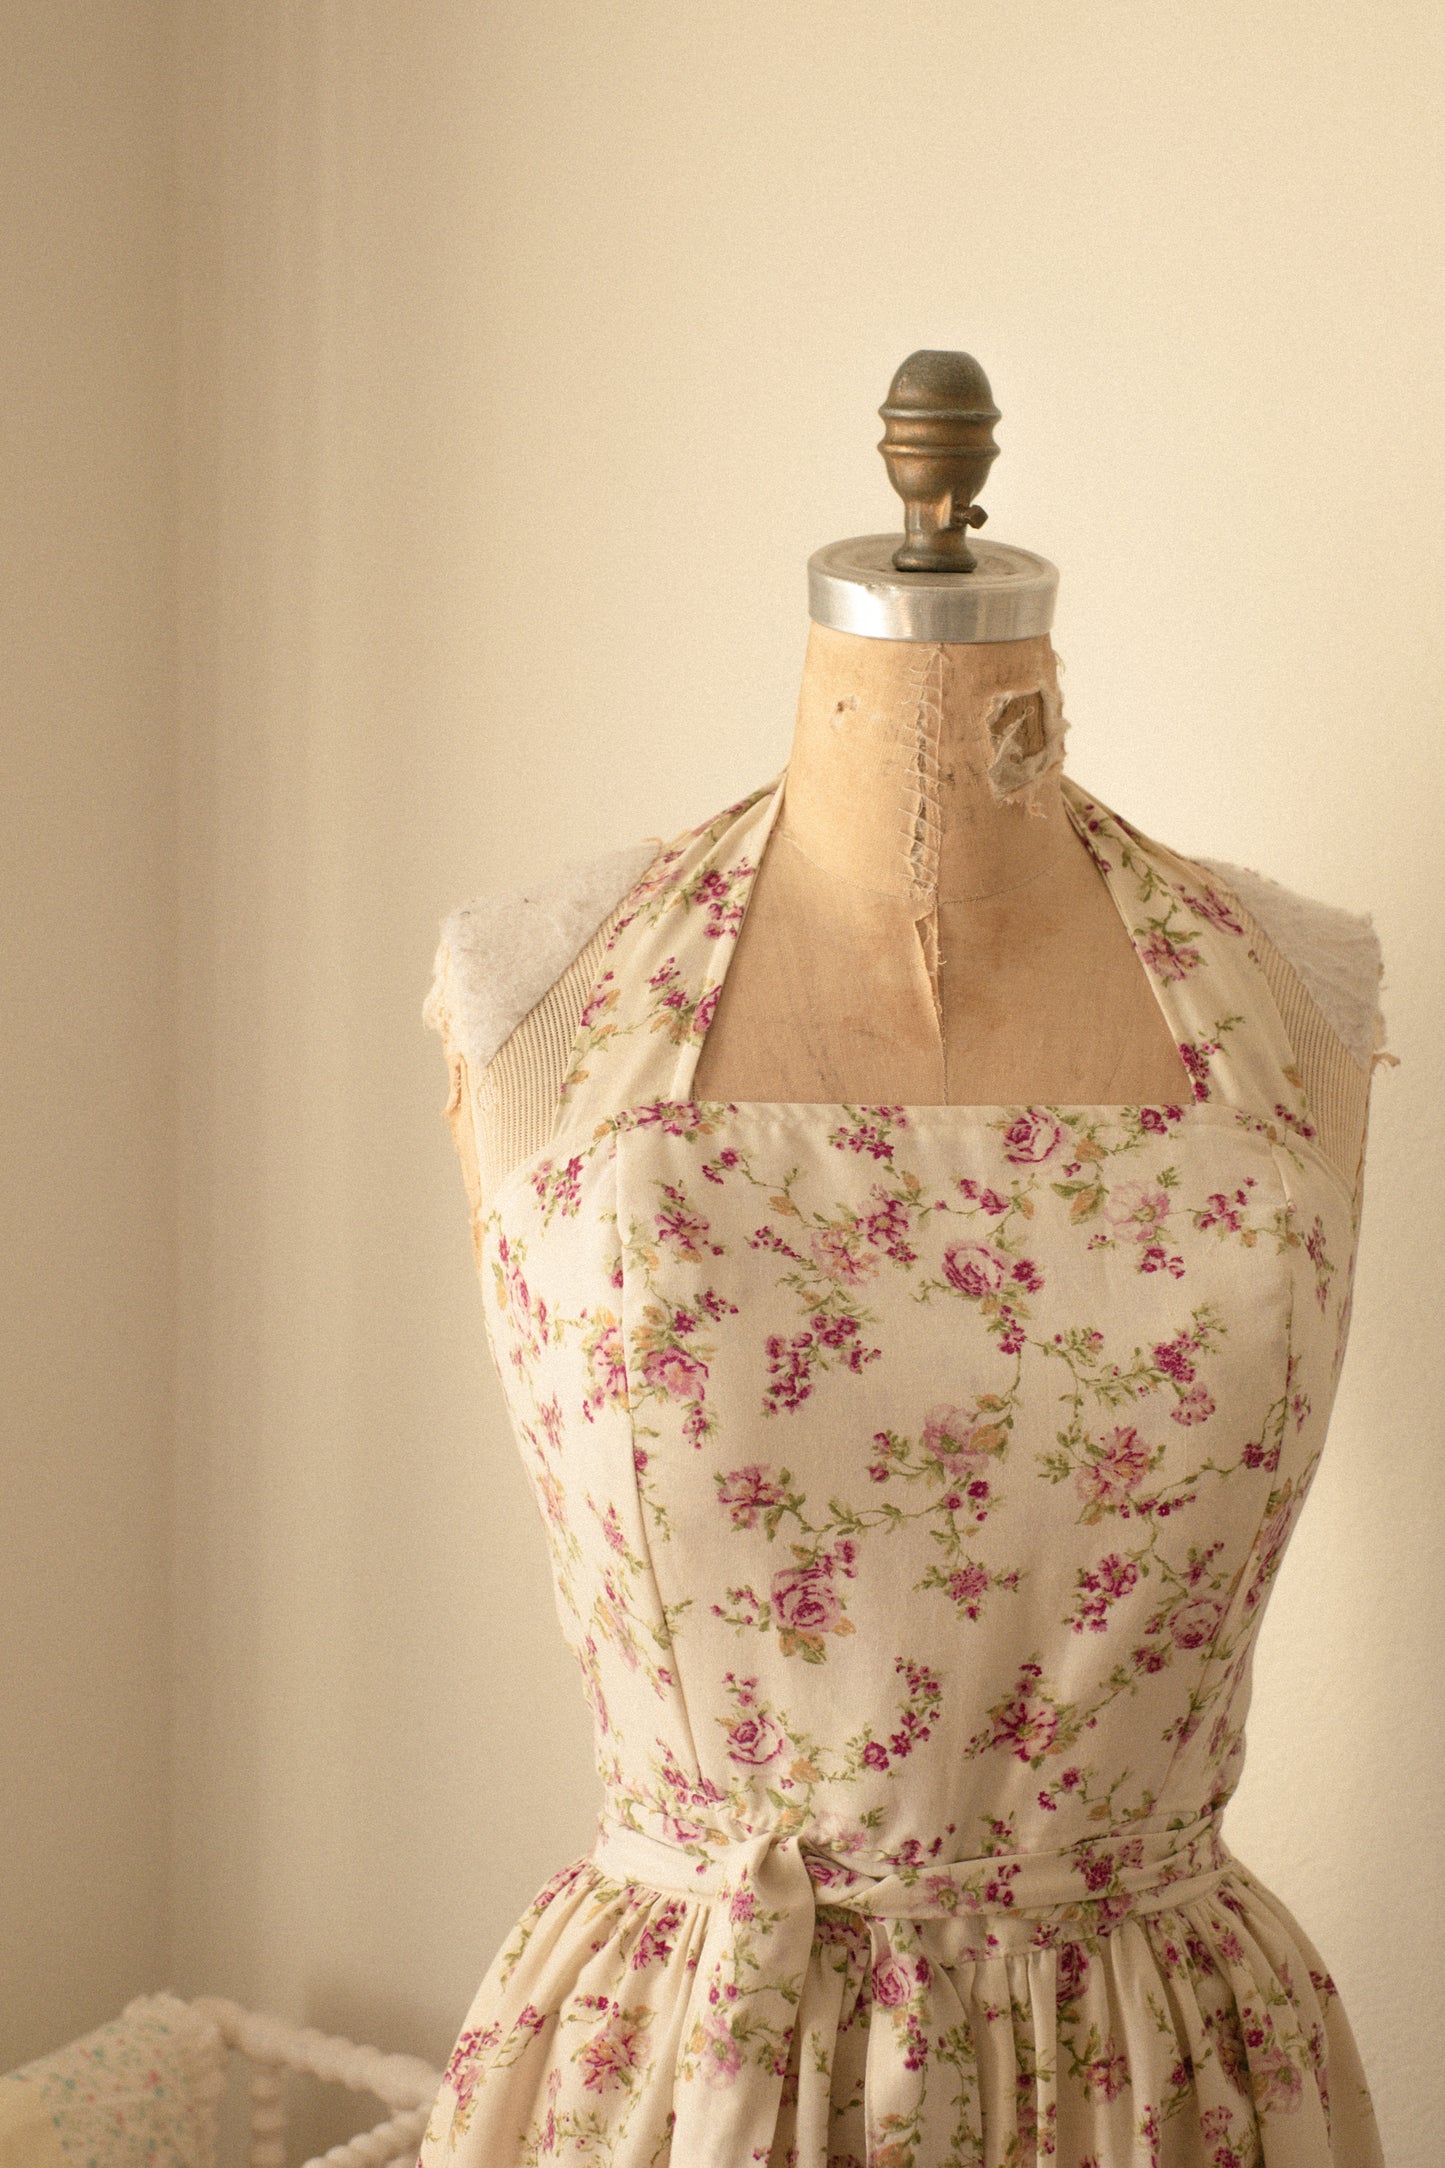 Handmade vintage floral apron set - Love letters